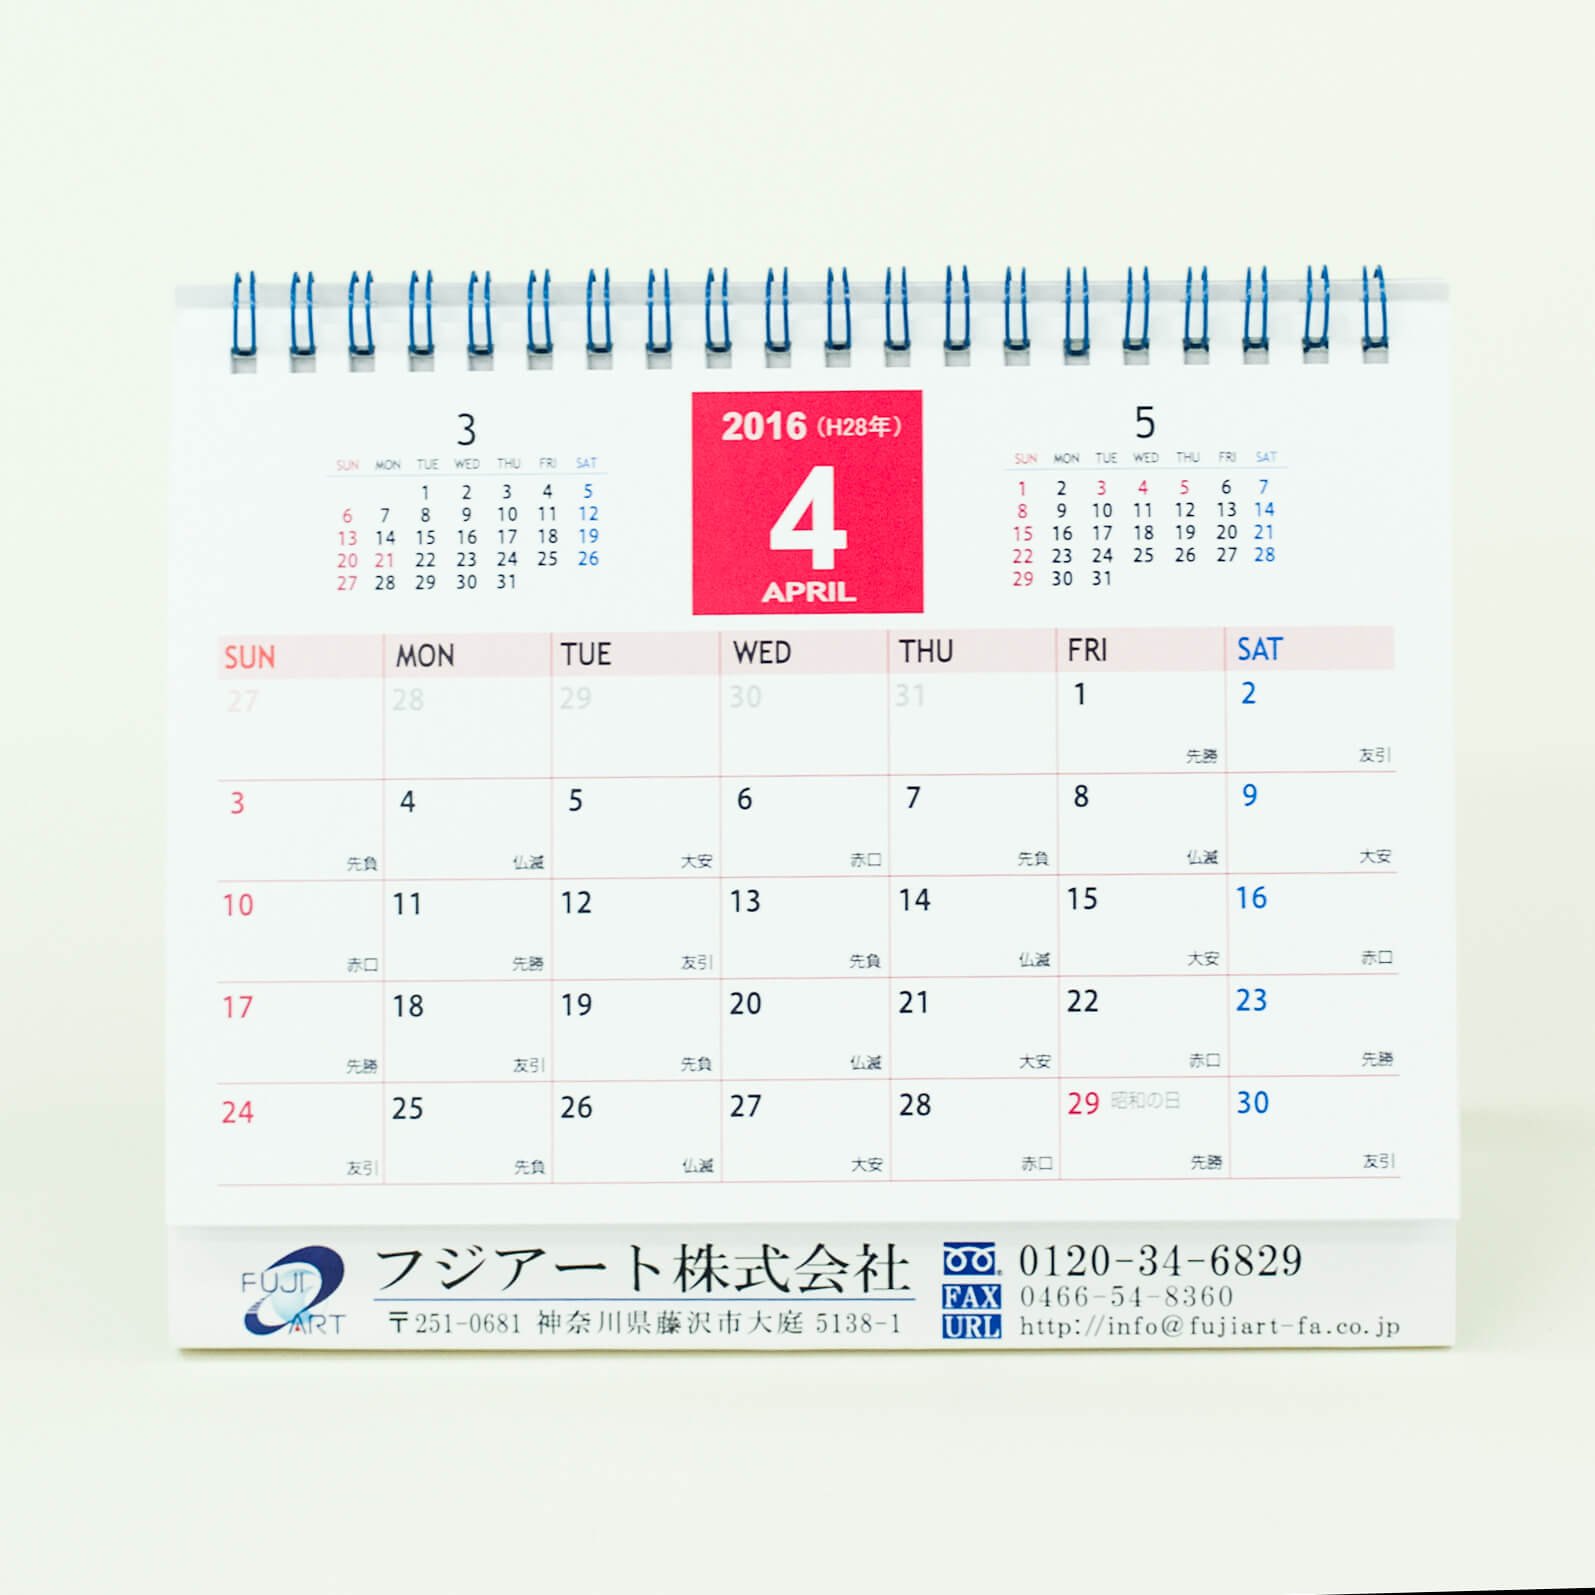 卓上カレンダー リング製本 B6サイズ フジアート株式会社 様 オリジナルカレンダーの製作 印刷なら ガップリ